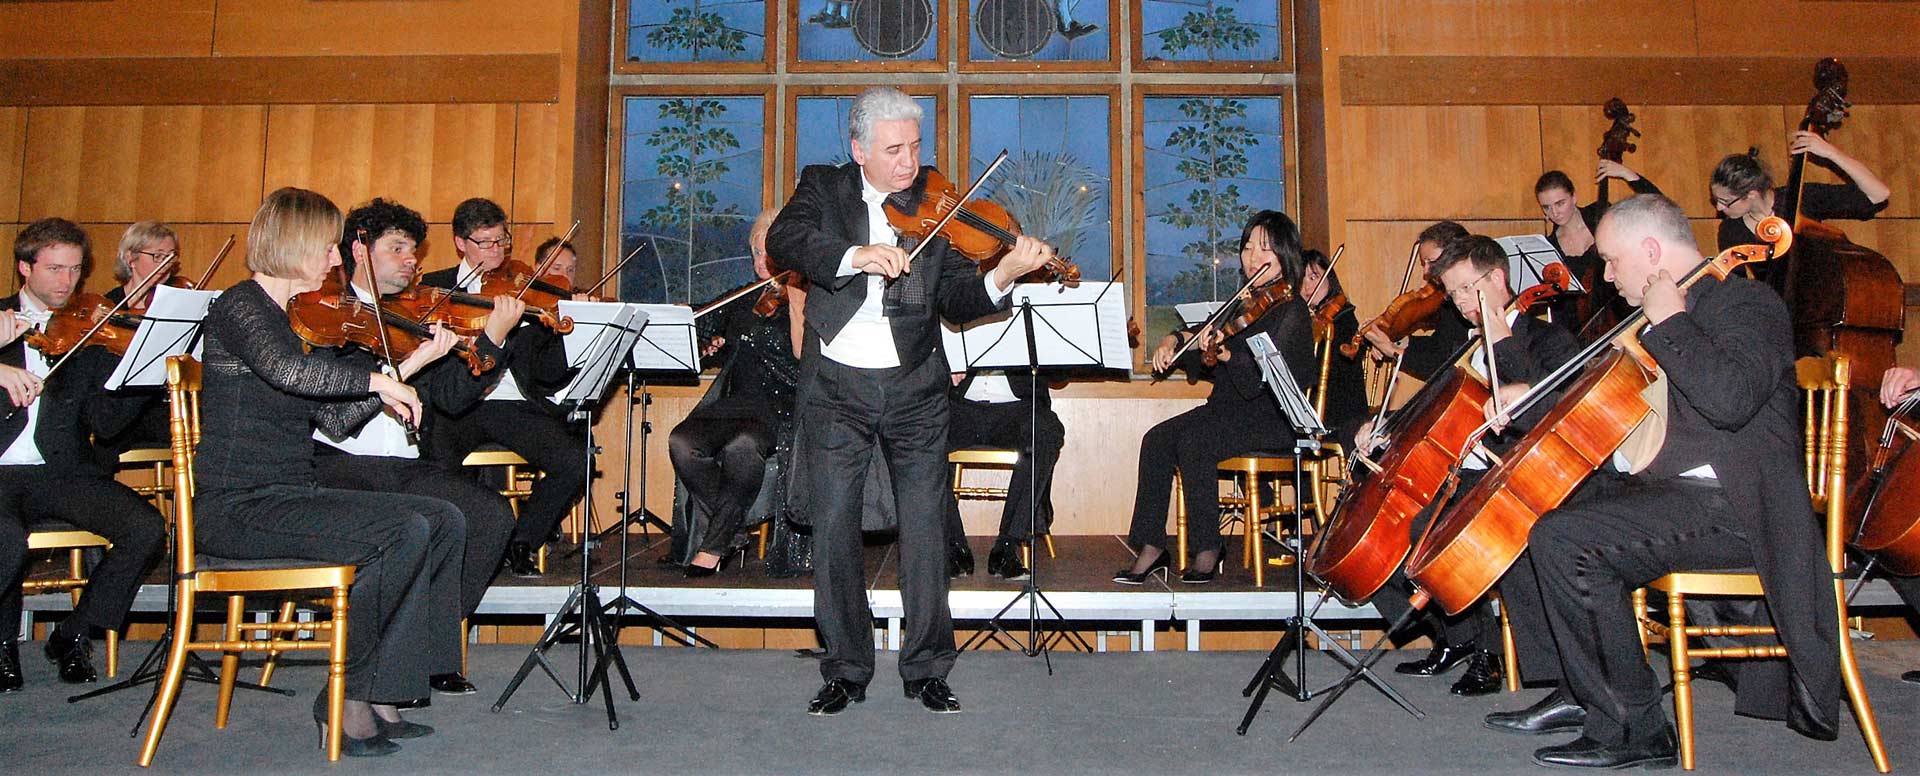 Die Konzertreihe der Musikvereinigung Kelheim zum Beethoven-Jahr müssen wegen der Corona-Pandemie auf 2021 verschoben werden (Foto: Musikvereinigung Kelheim)